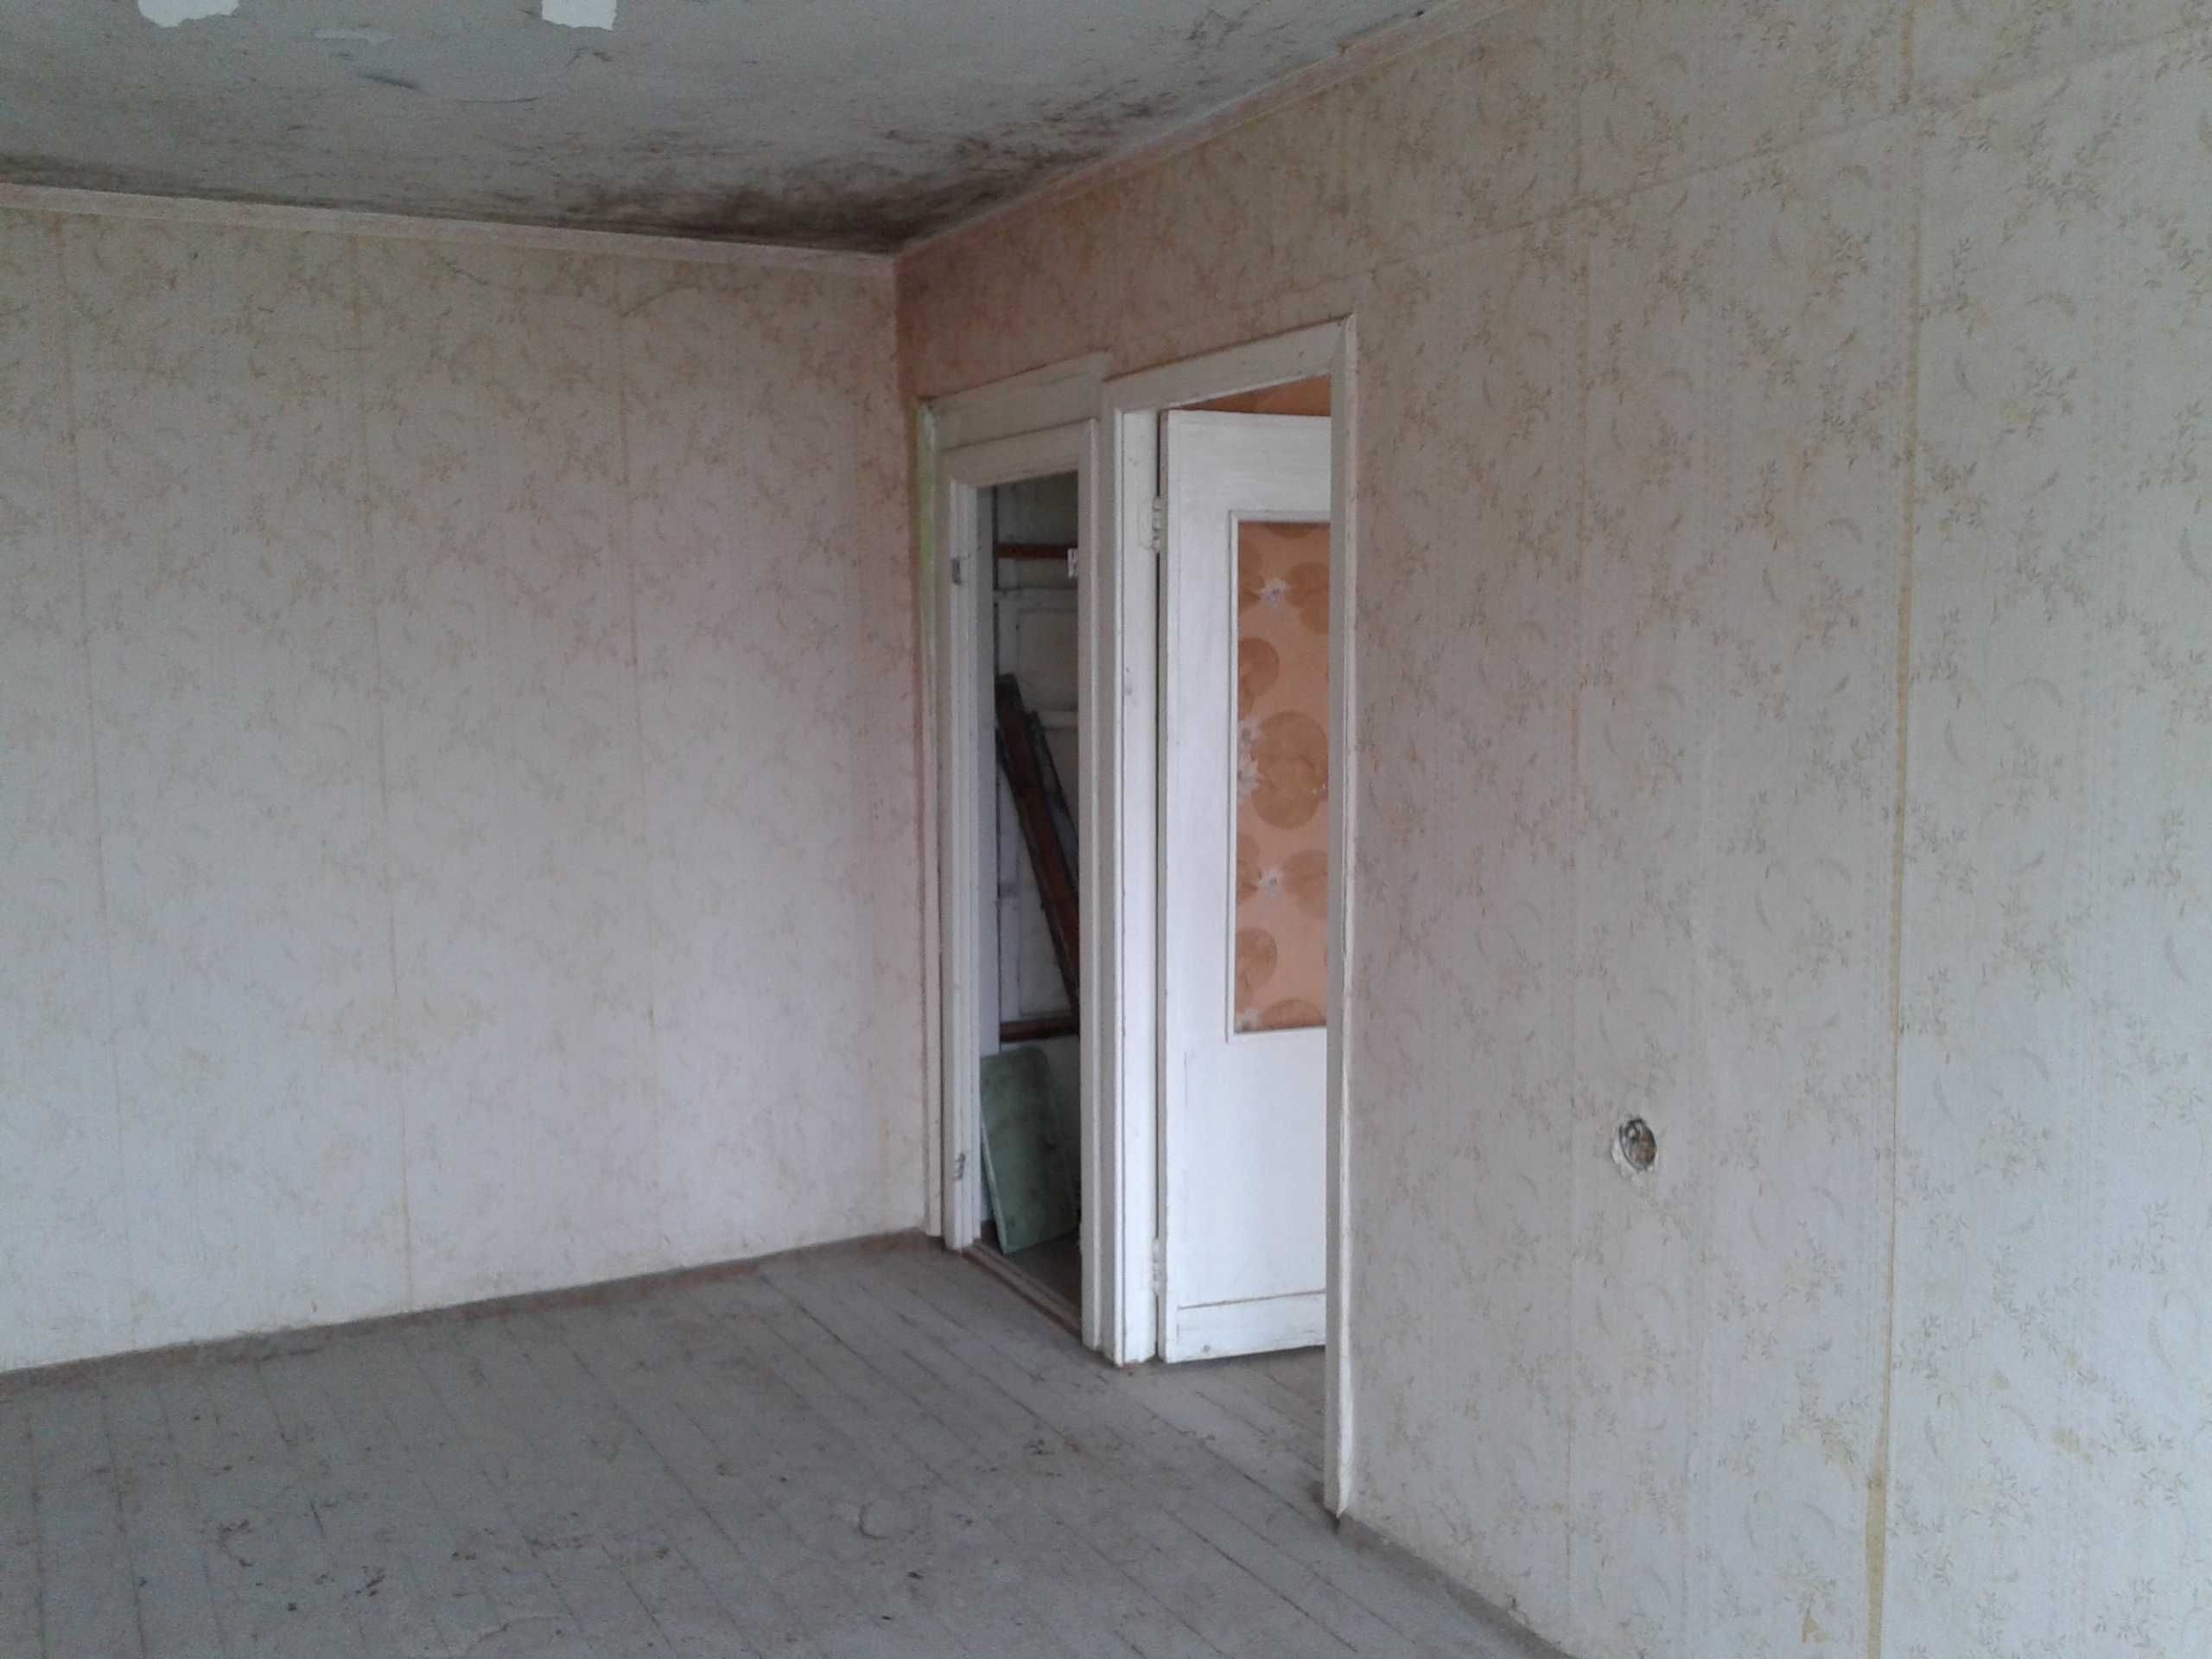 Продам двухкомнатную квартиру в пгт Скала-Подольская